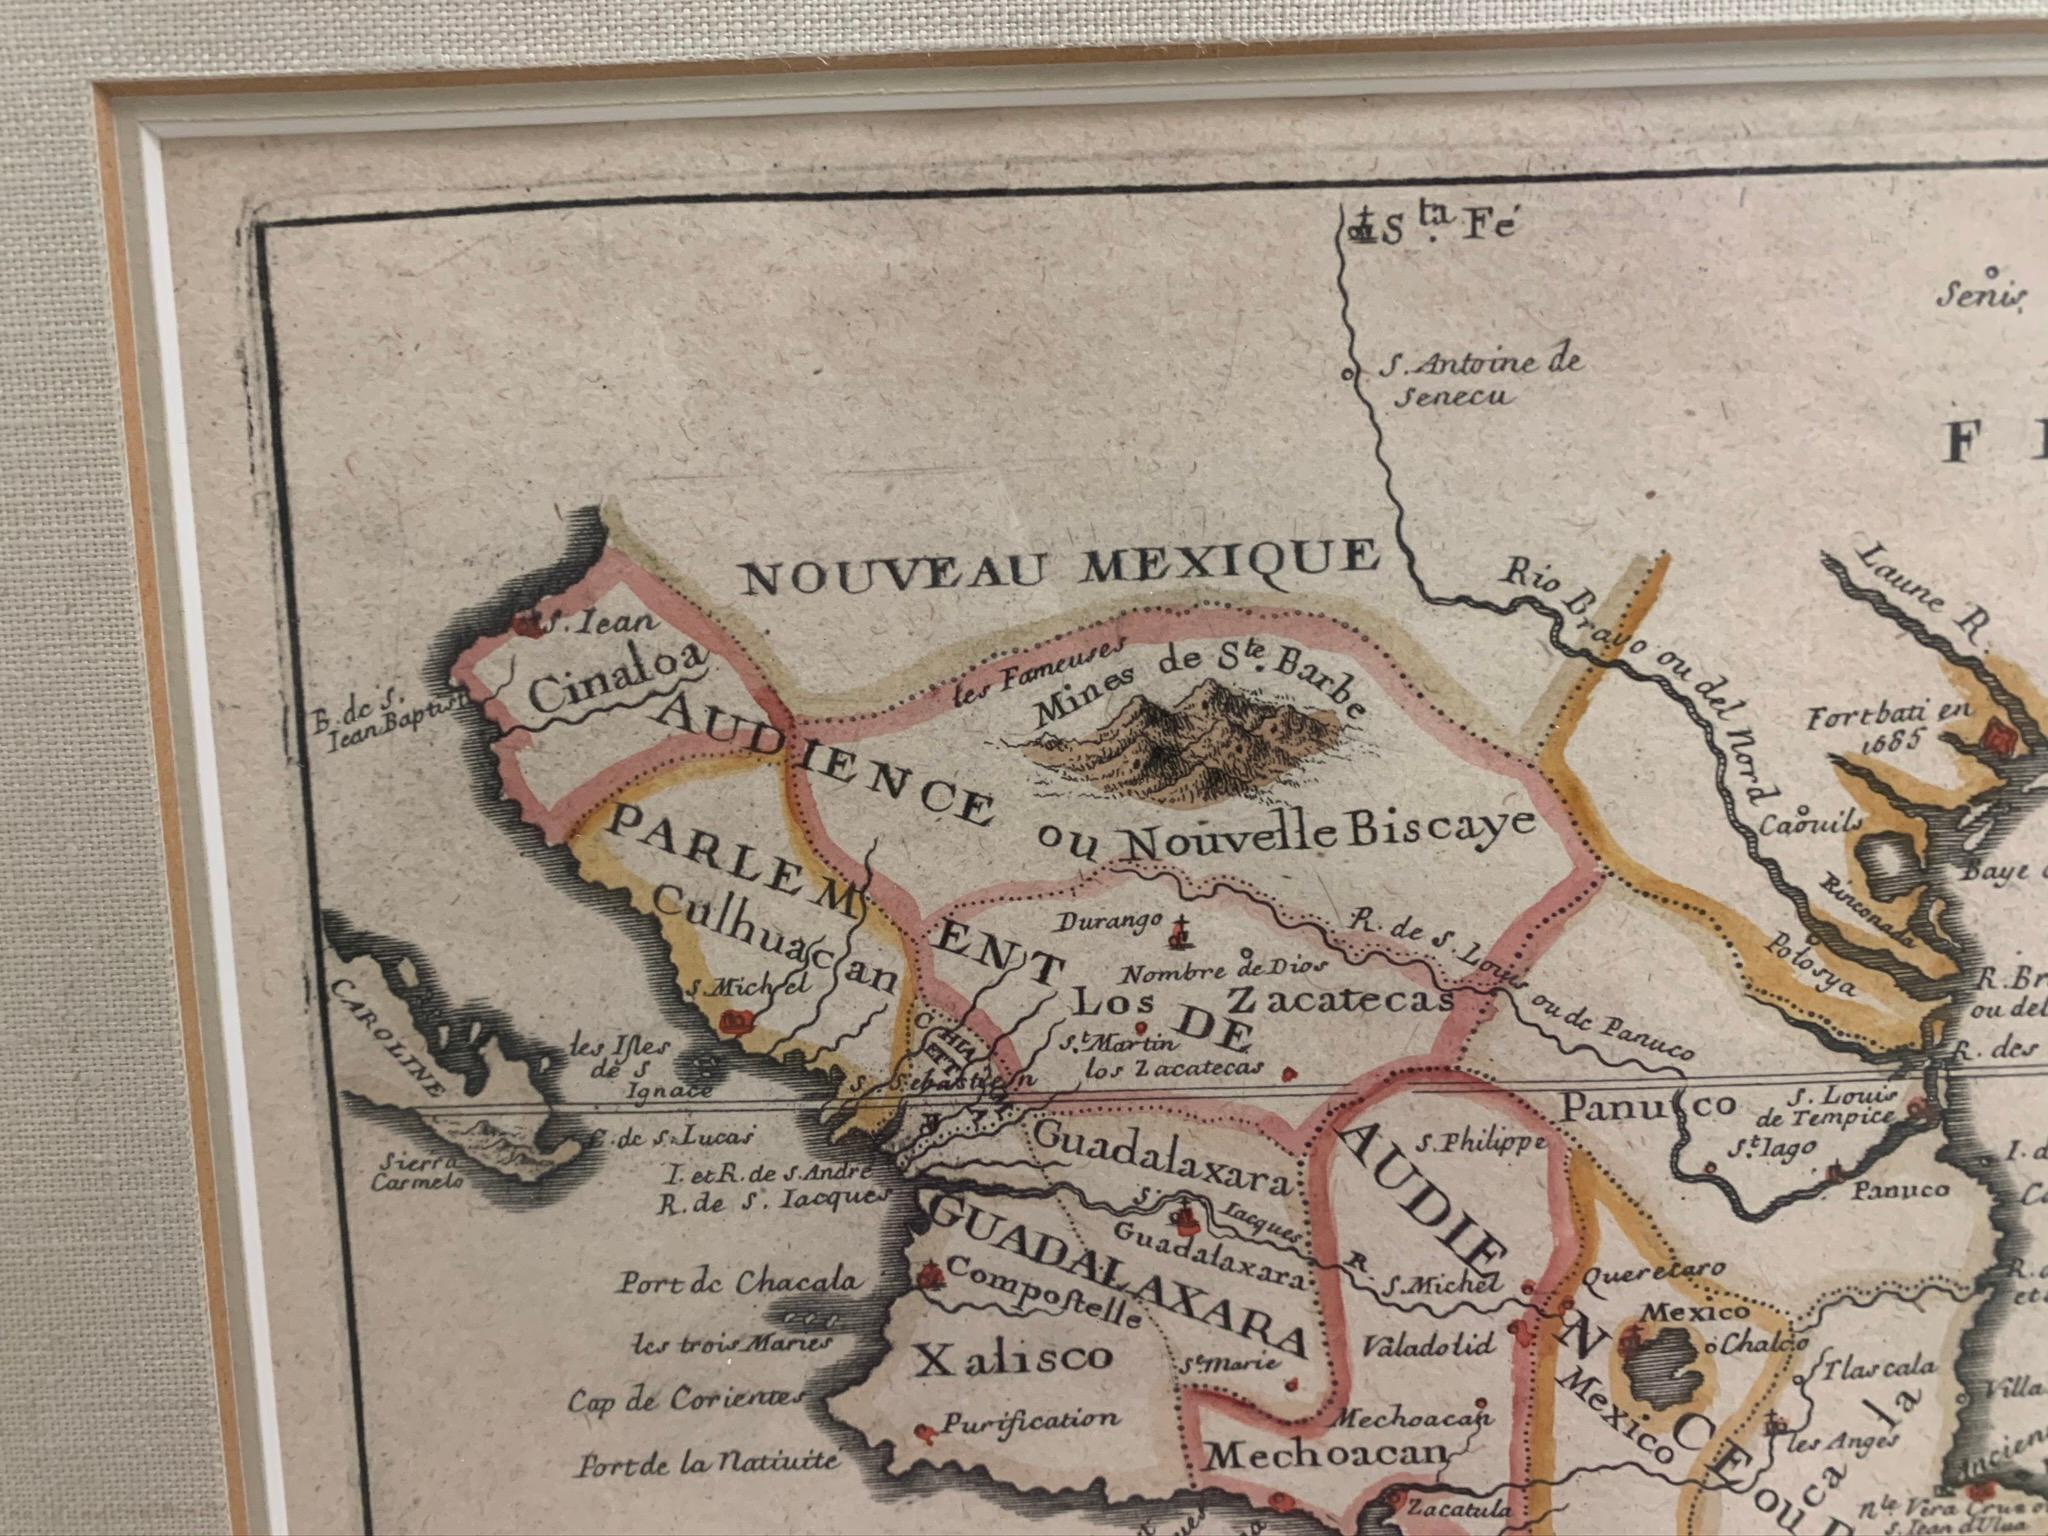 Gerahmte Karte von Mexiko und Florida um 1705, Paris. Kleine Karte mit Mexiko und der Golfküste. Einschubtext mit Angaben zu Panama, Acapulco, Mexiko-Stadt und dem Mississippi. Erstreckt sich im Norden bis Santa Fe. Gerahmt in einem geschnitzten